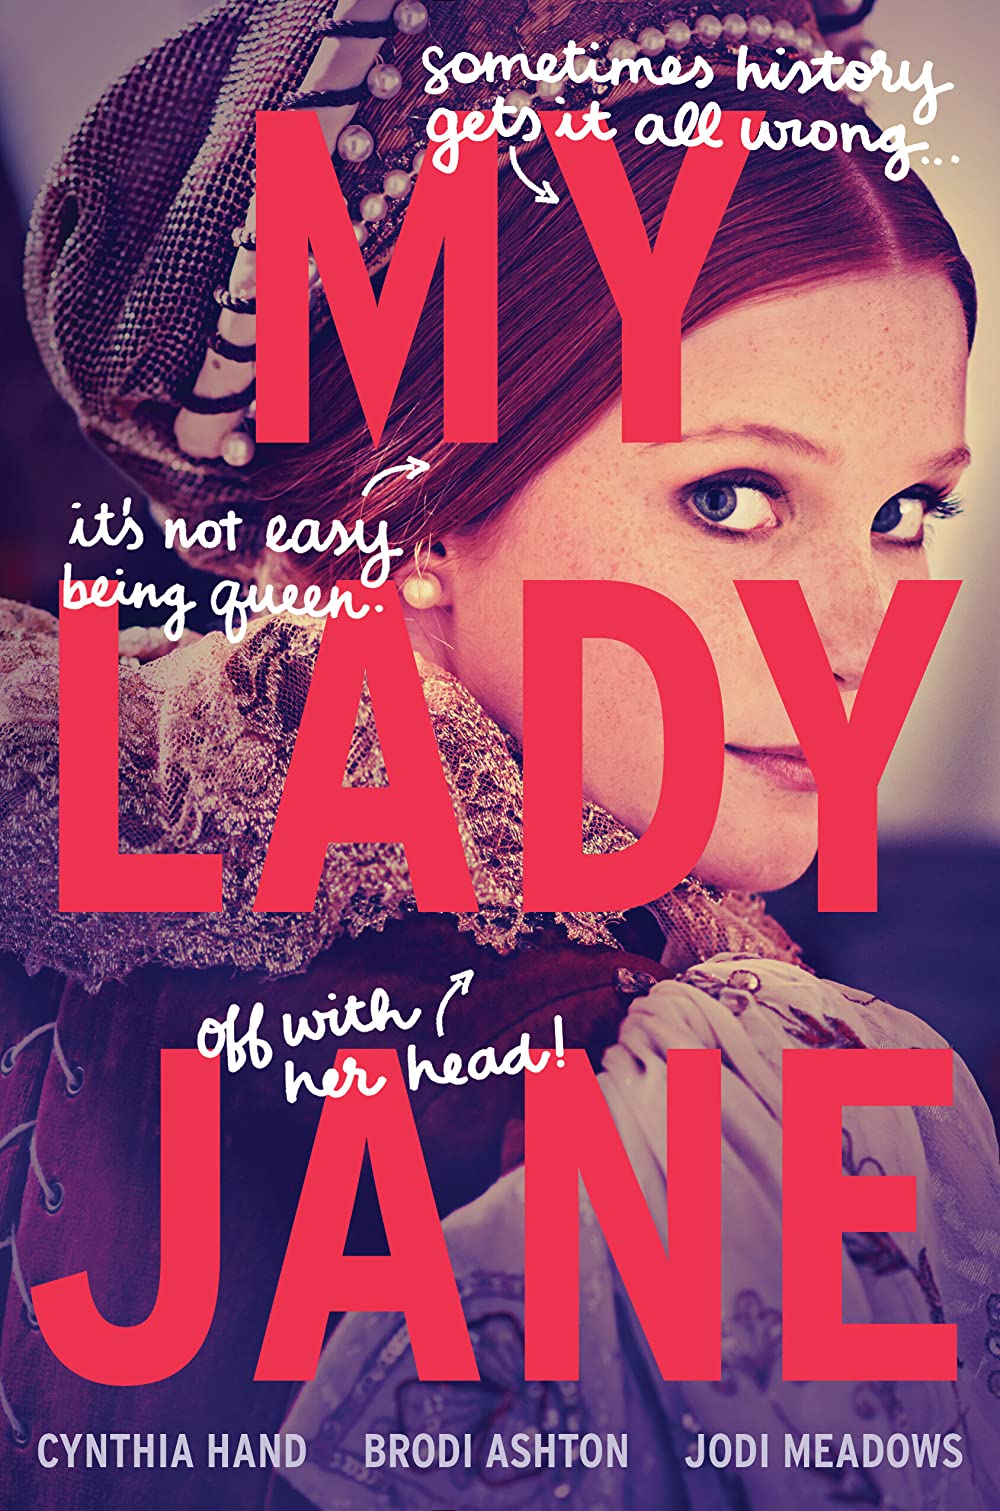 My Lady Jane – Season 1 (Amazon)